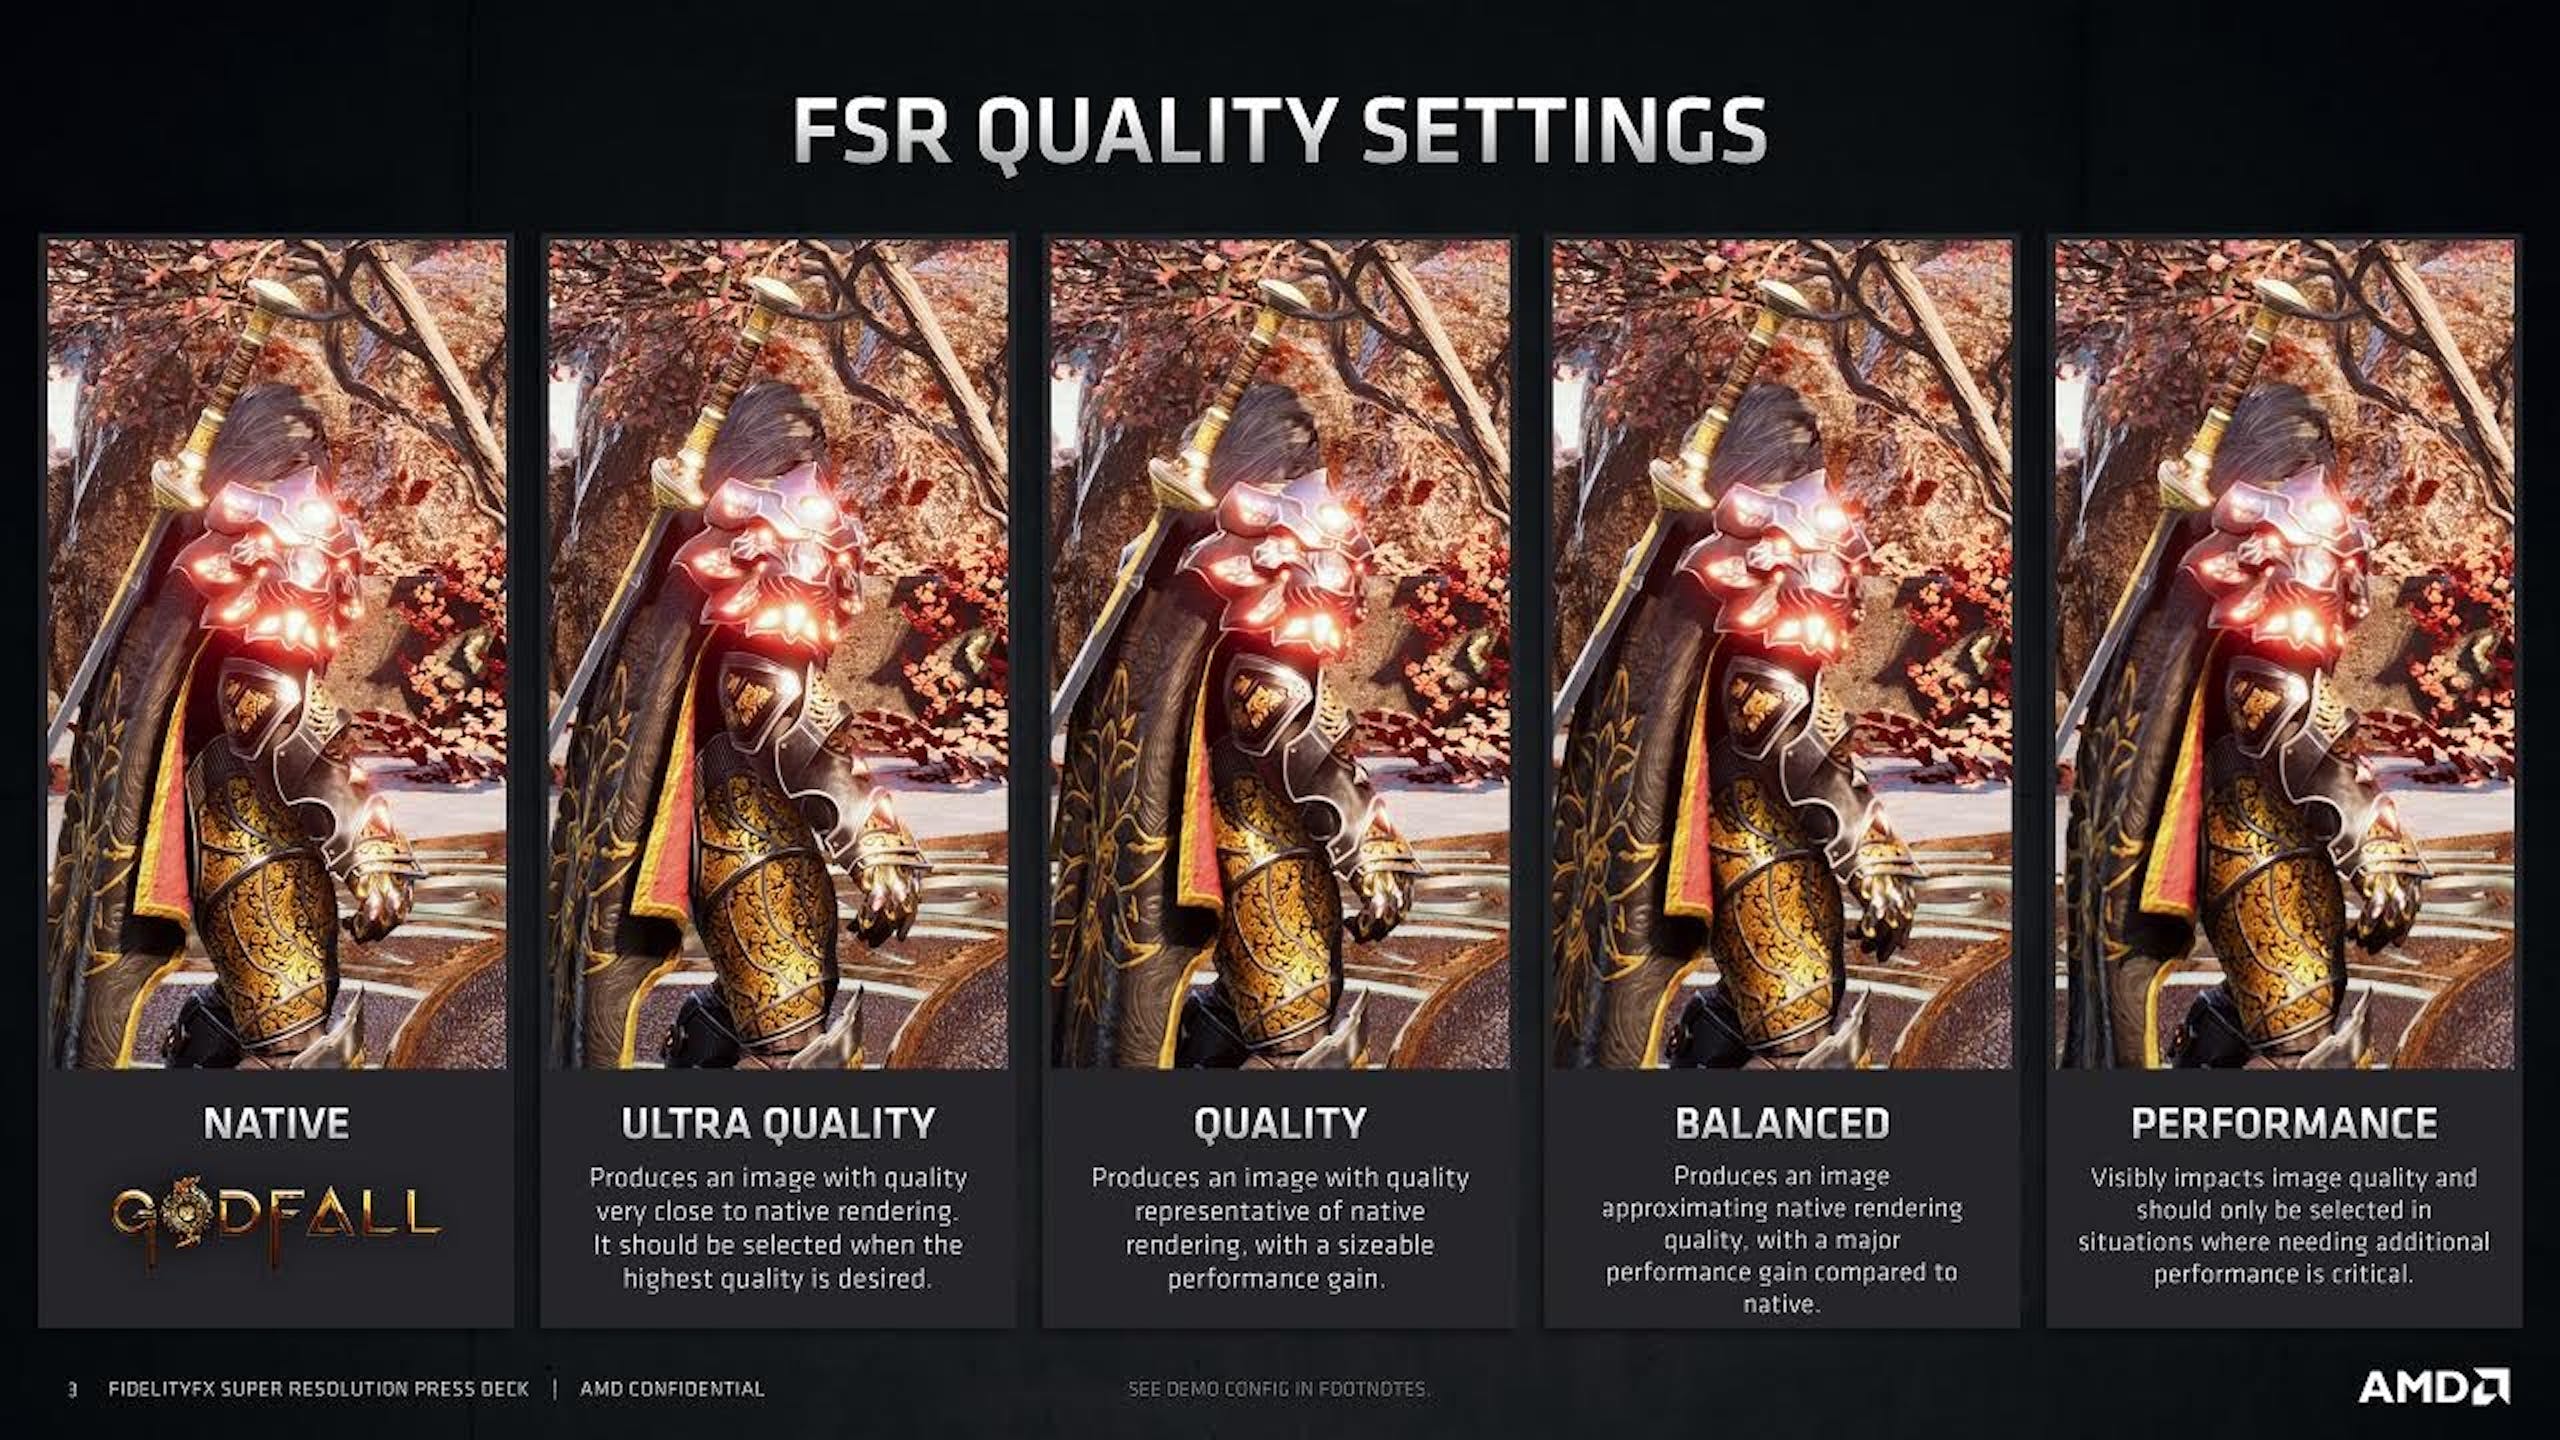 照片中提到了FSR QUALITY SETTINGS、NATIVE、ULTRA QUALITY，包含了海報、圖形處理單元、Advanced Micro Devices公司、英偉達、視頻縮放器